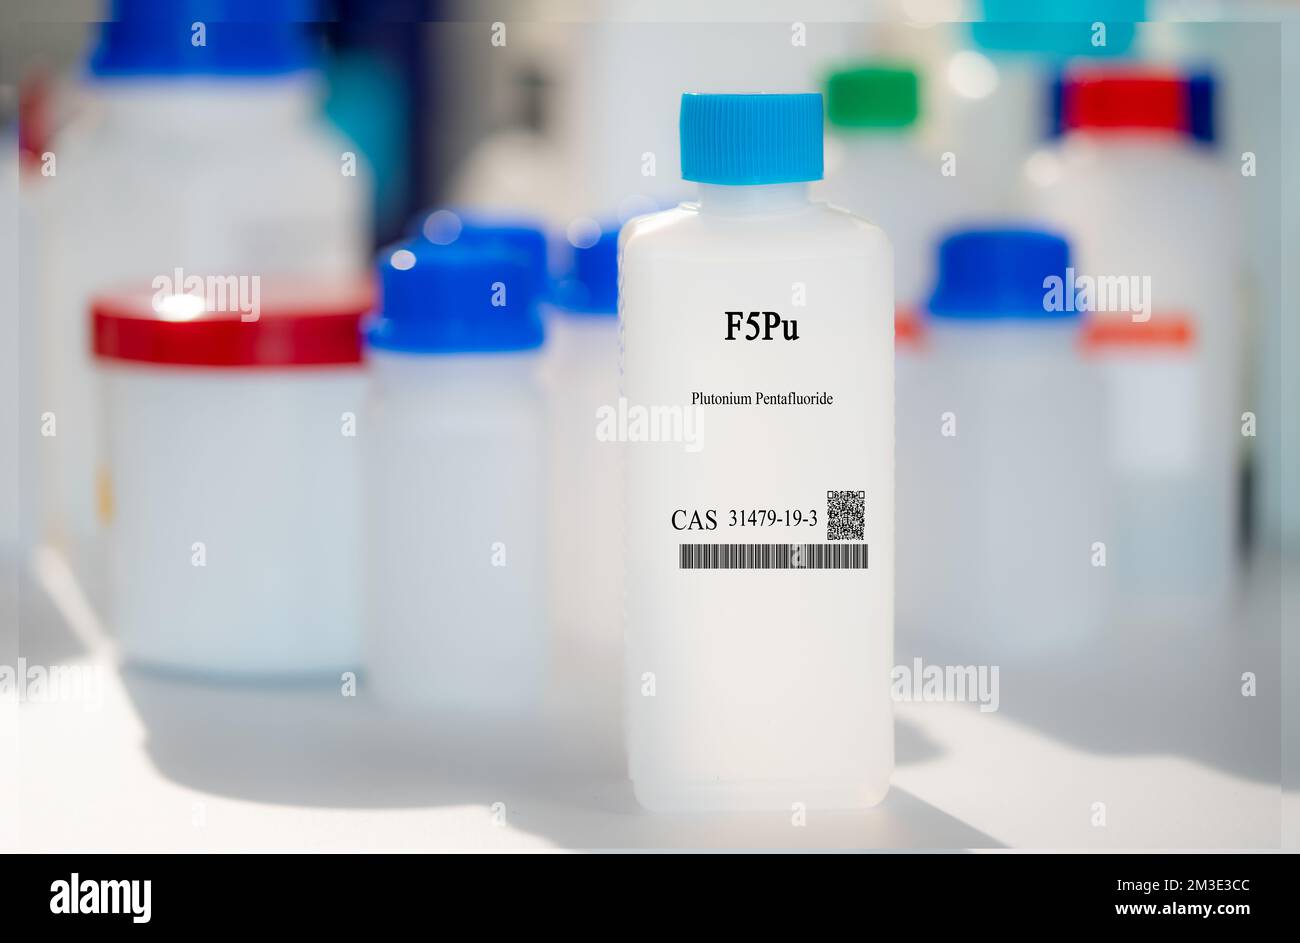 F5Pu pentafluorure de plutonium cas 31479-19-3 substance chimique dans un emballage de laboratoire en plastique blanc Banque D'Images